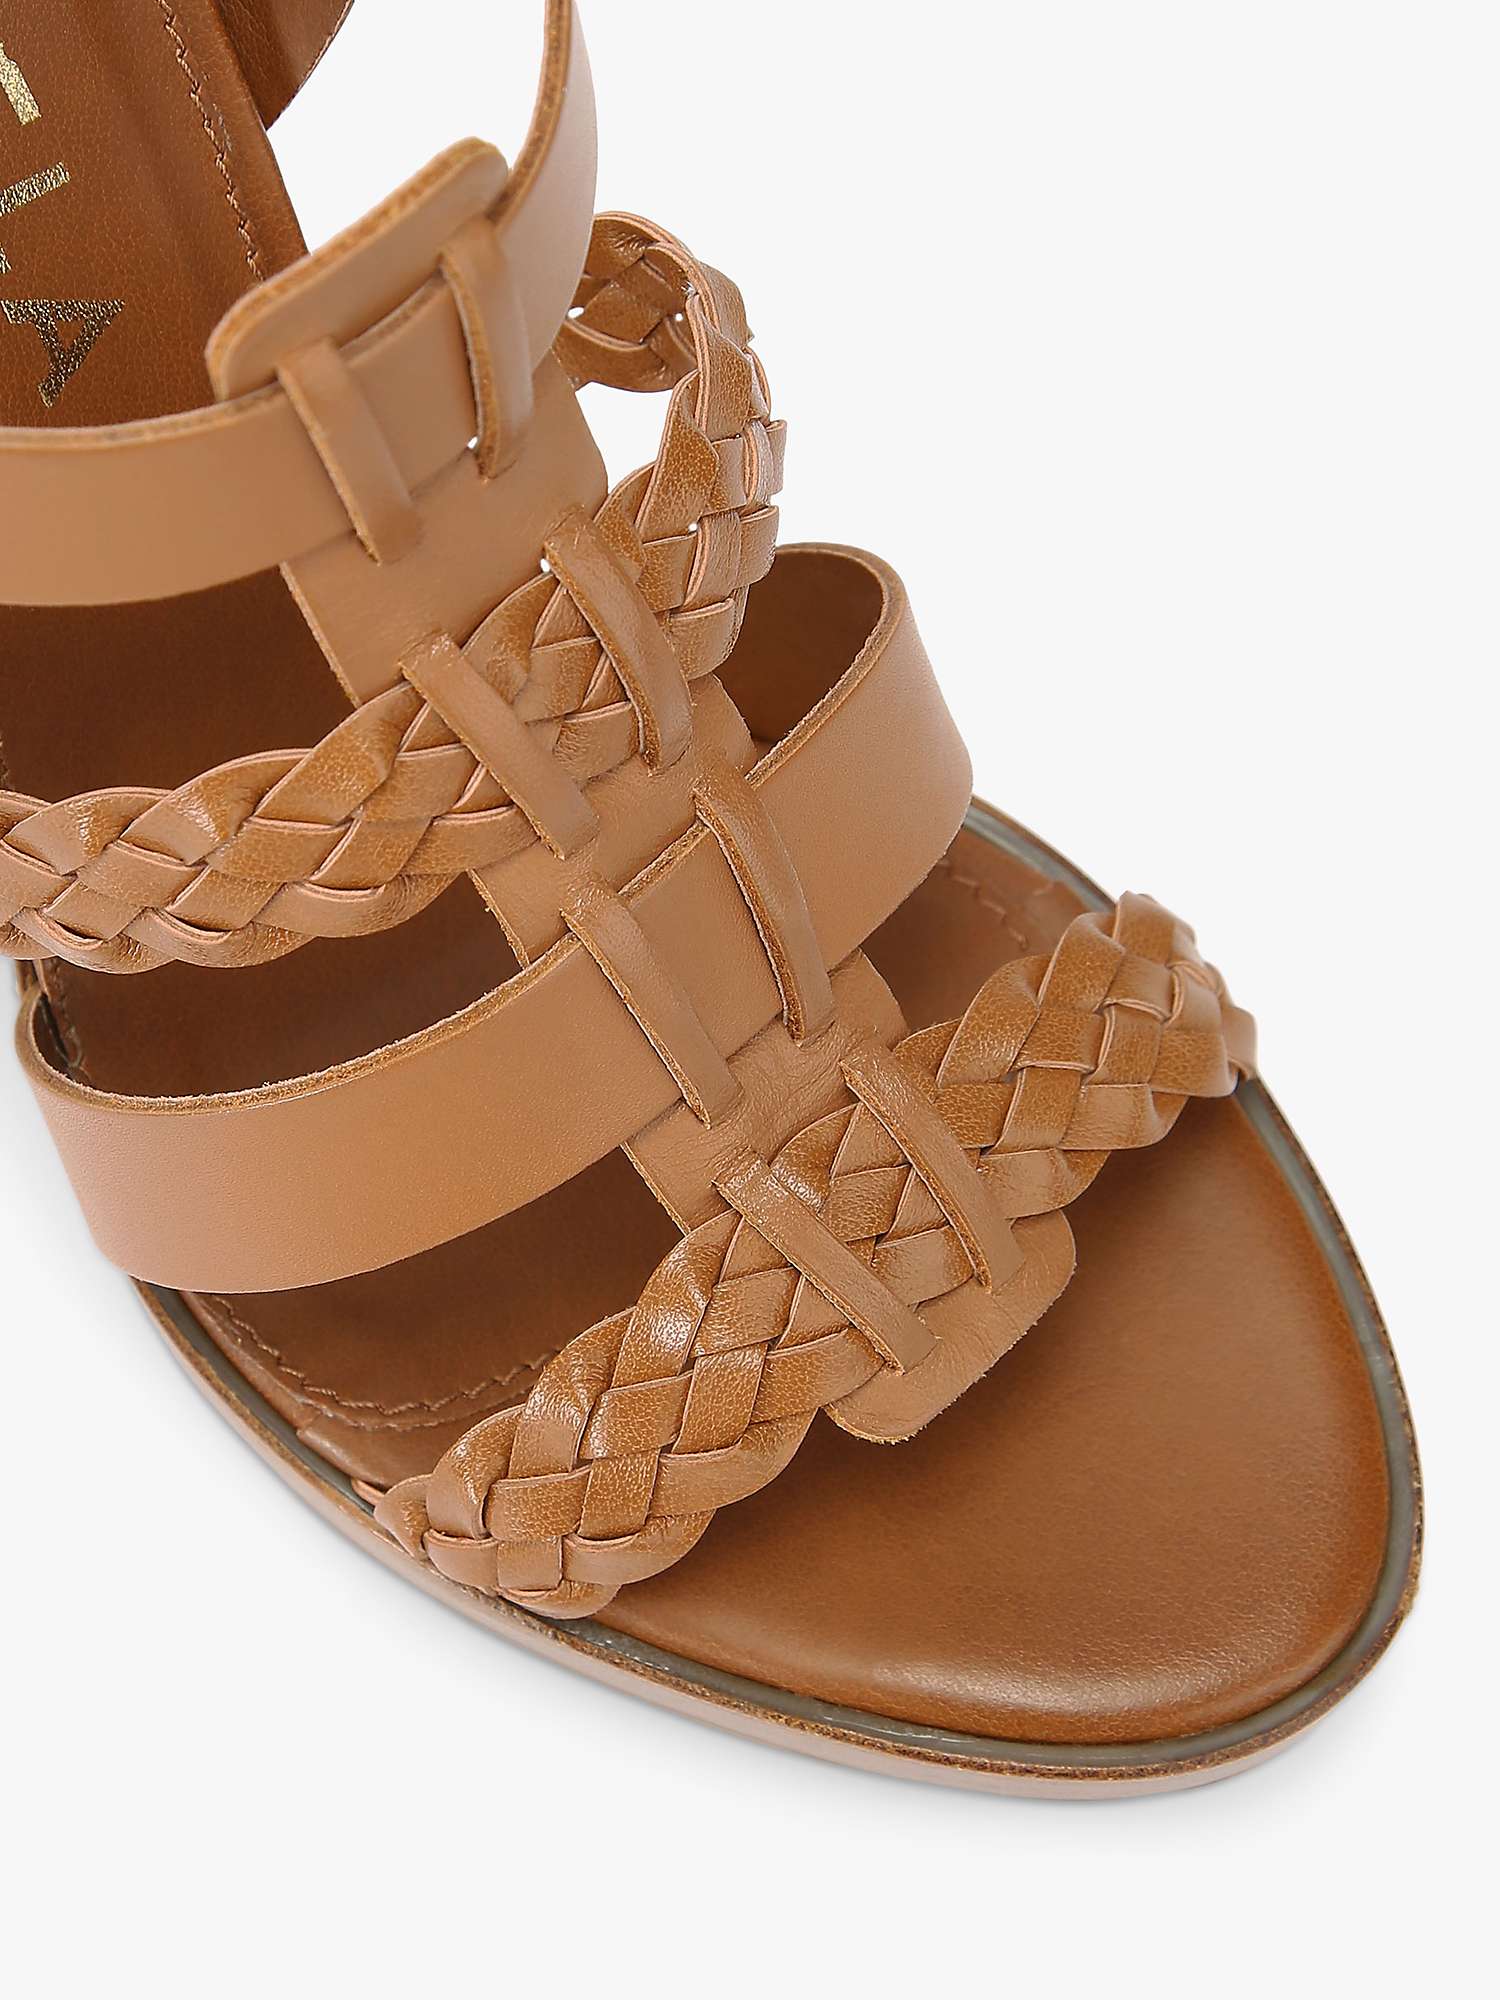 Buy Carvela Comfort Krill Leather Platform Sandals Online at johnlewis.com